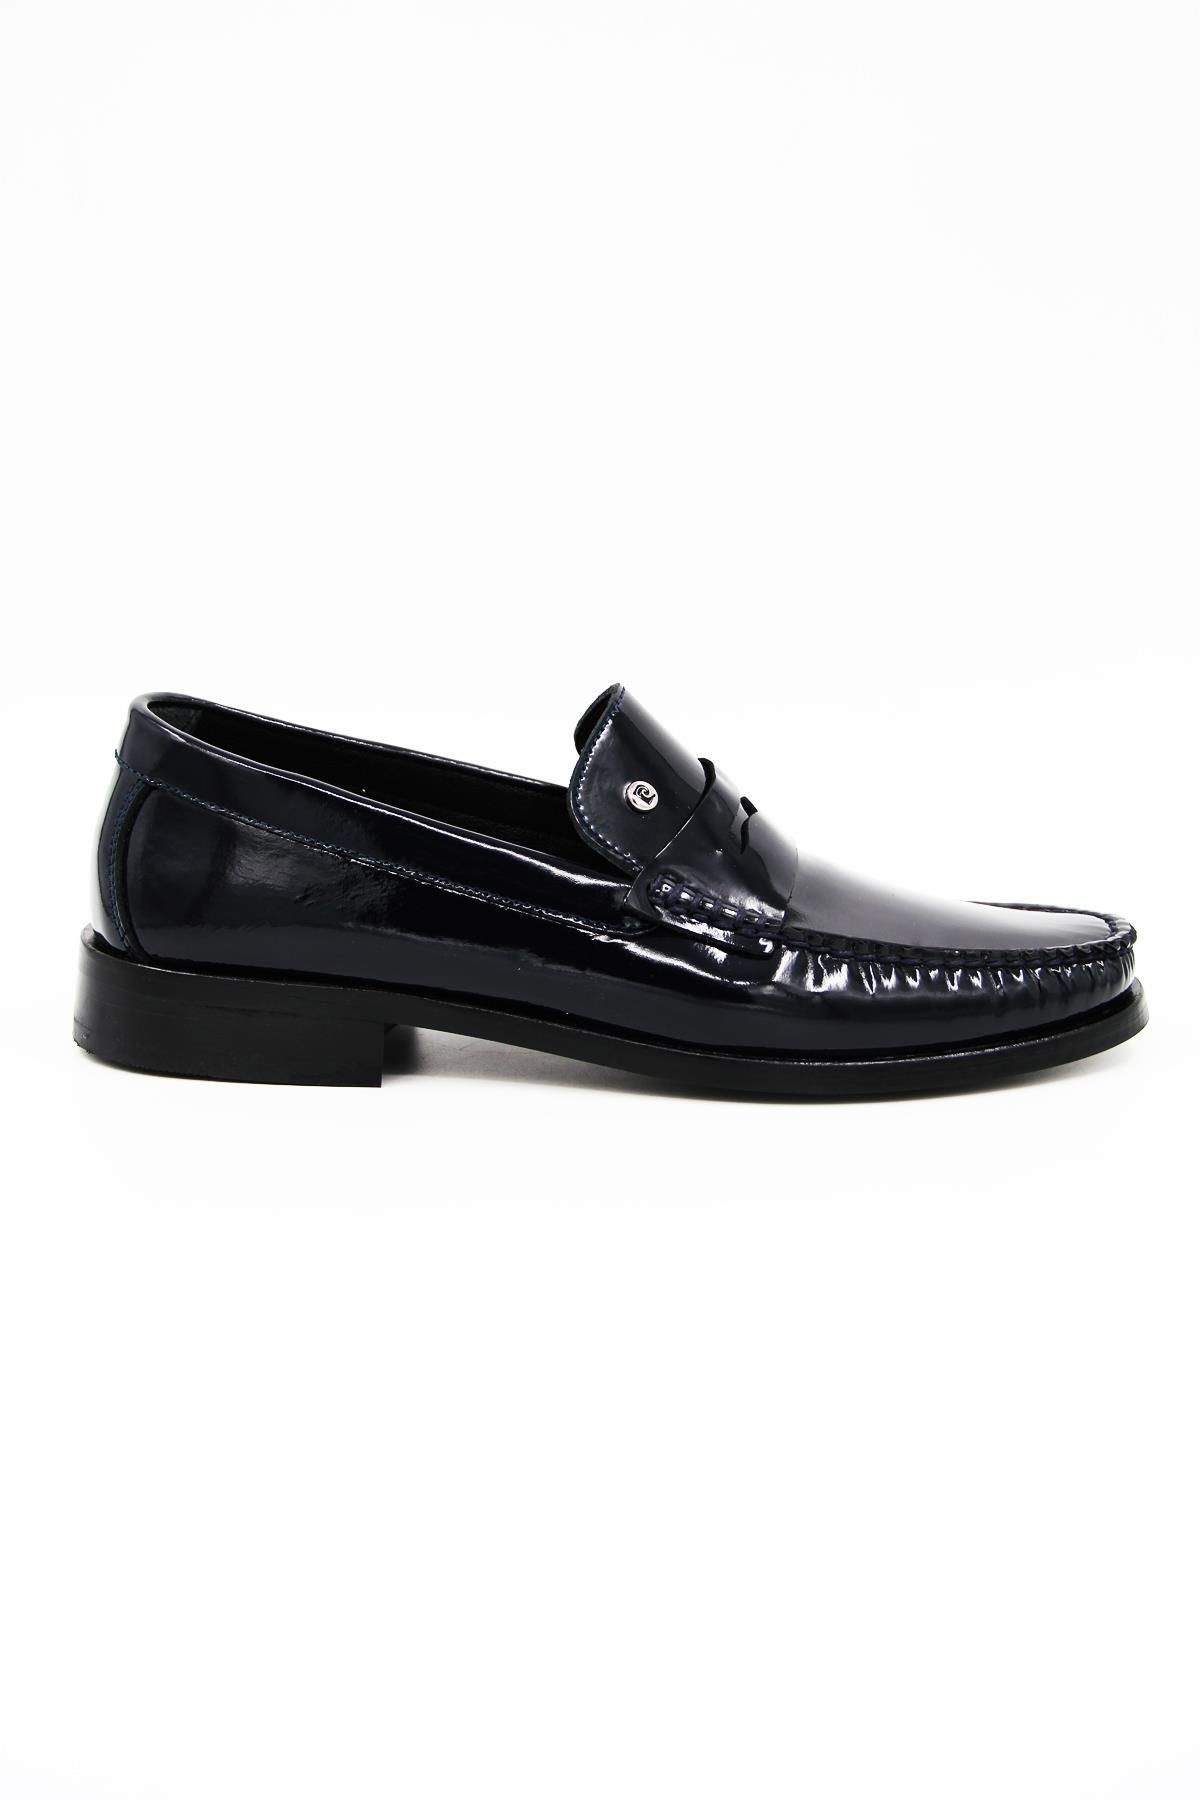 Pierre Cardin 25102 Erkek Klasik Ayakkabı - Lacivert